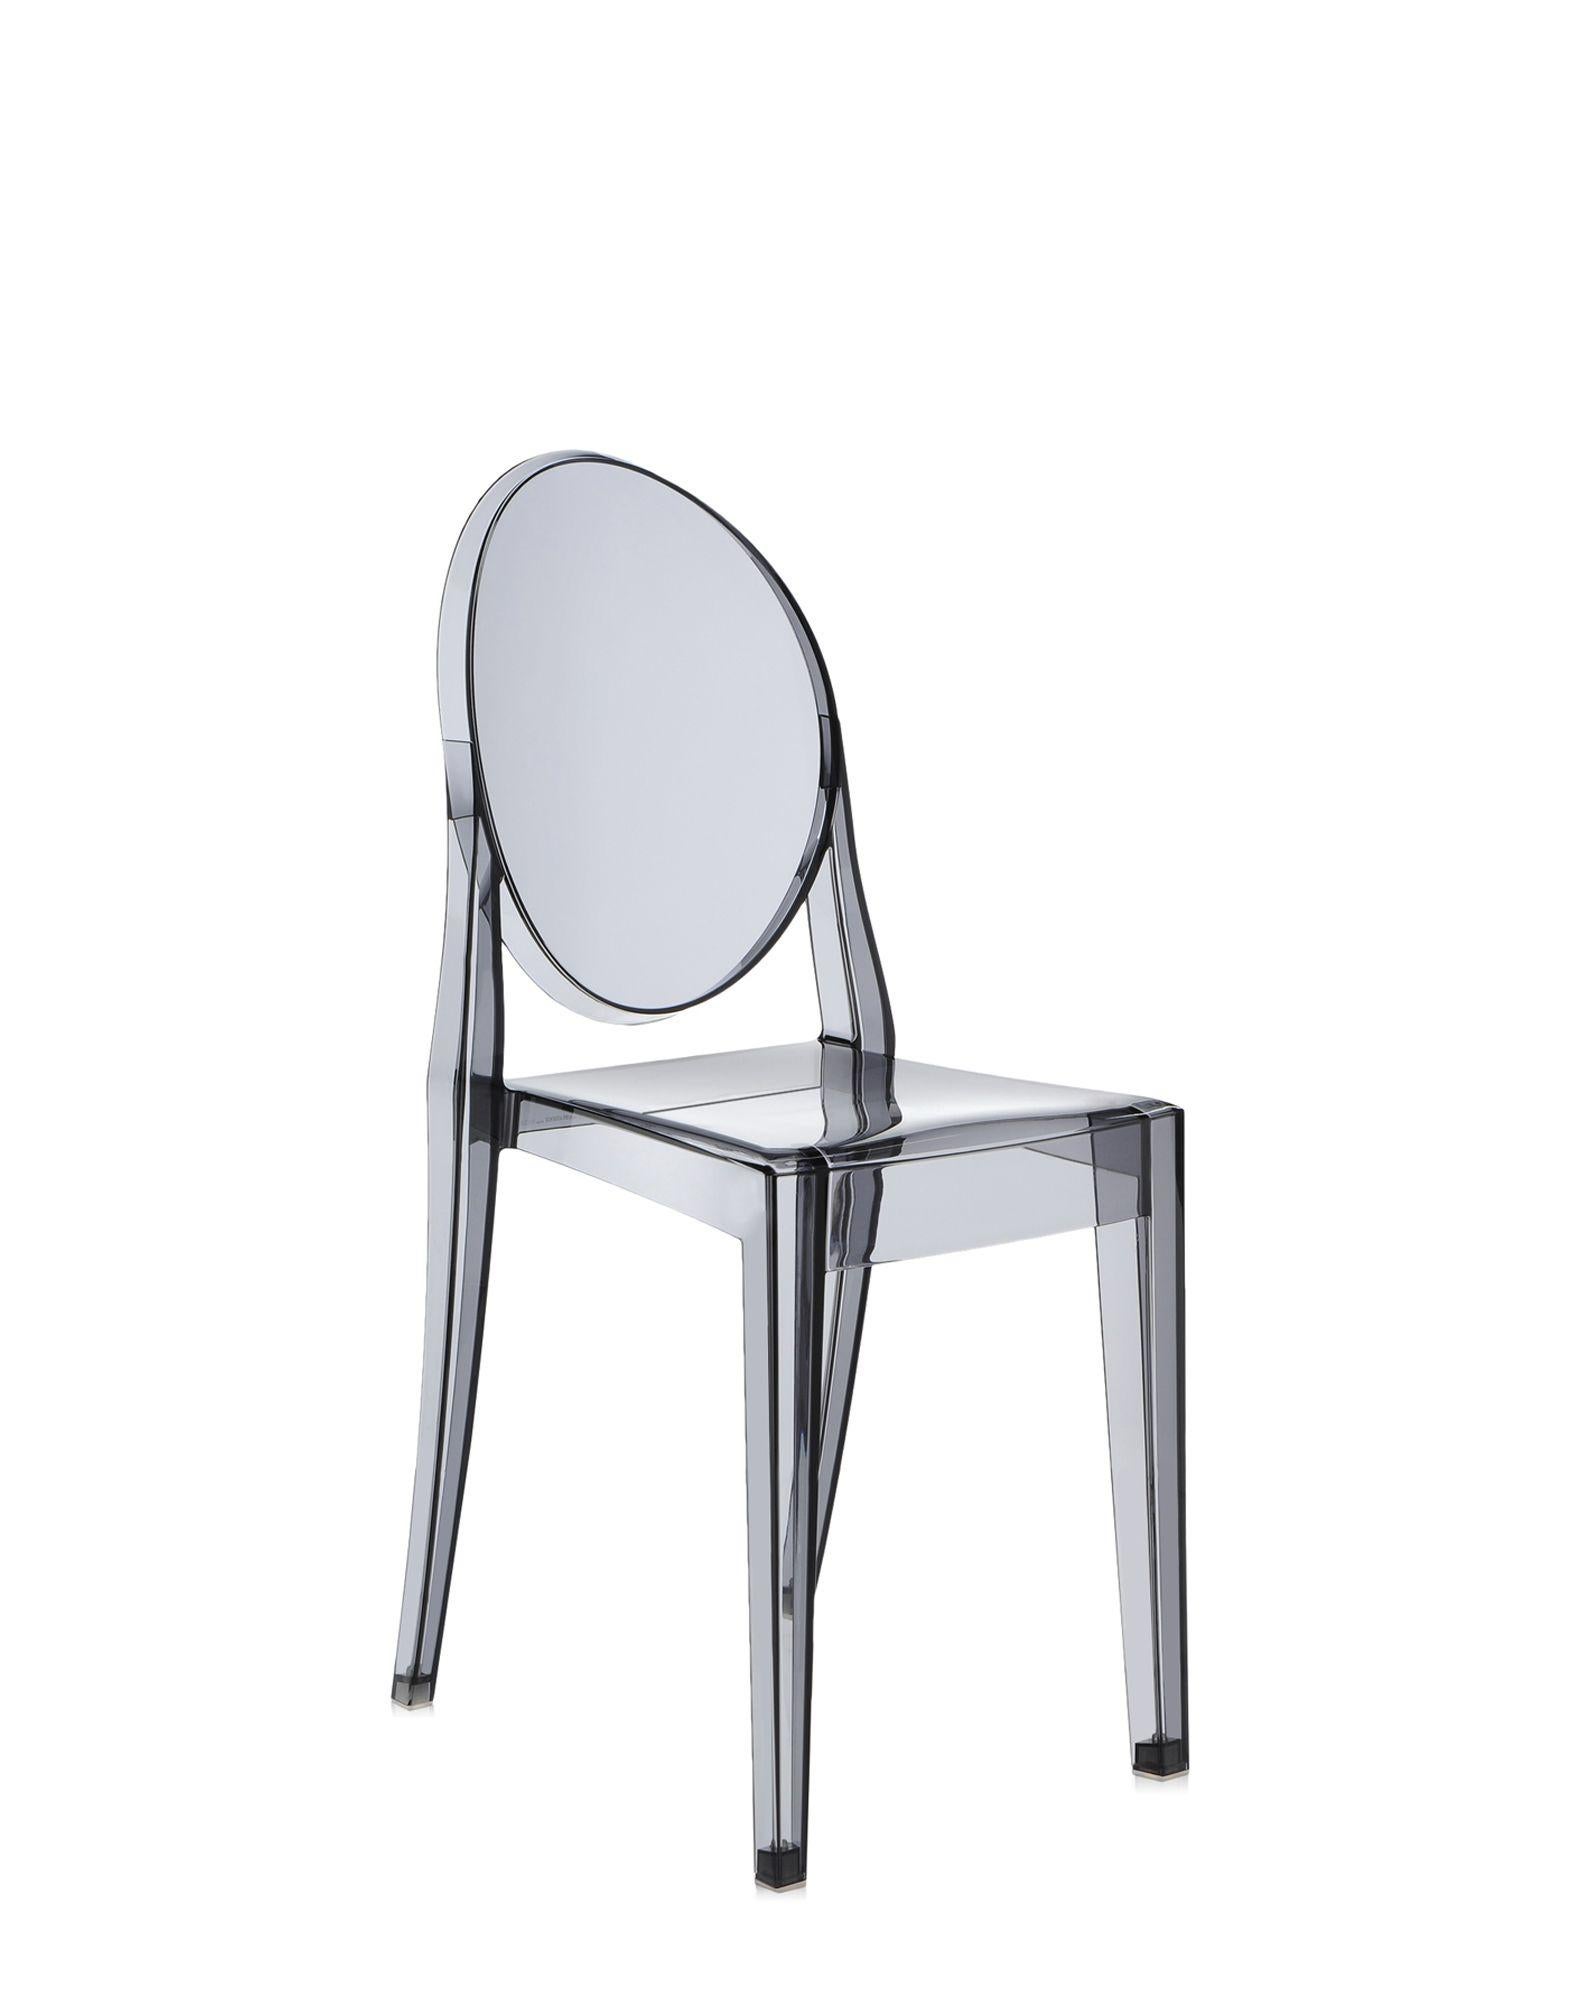 Il s'agit d'une chaise née de lignes classiques avec un dossier arrondi qui rappelle la forme des médaillons antiques, tandis que l'assise est linéaire et géométrique. Le fantôme Victoria est fabriqué en polycarbonate transparent et coloré et formé